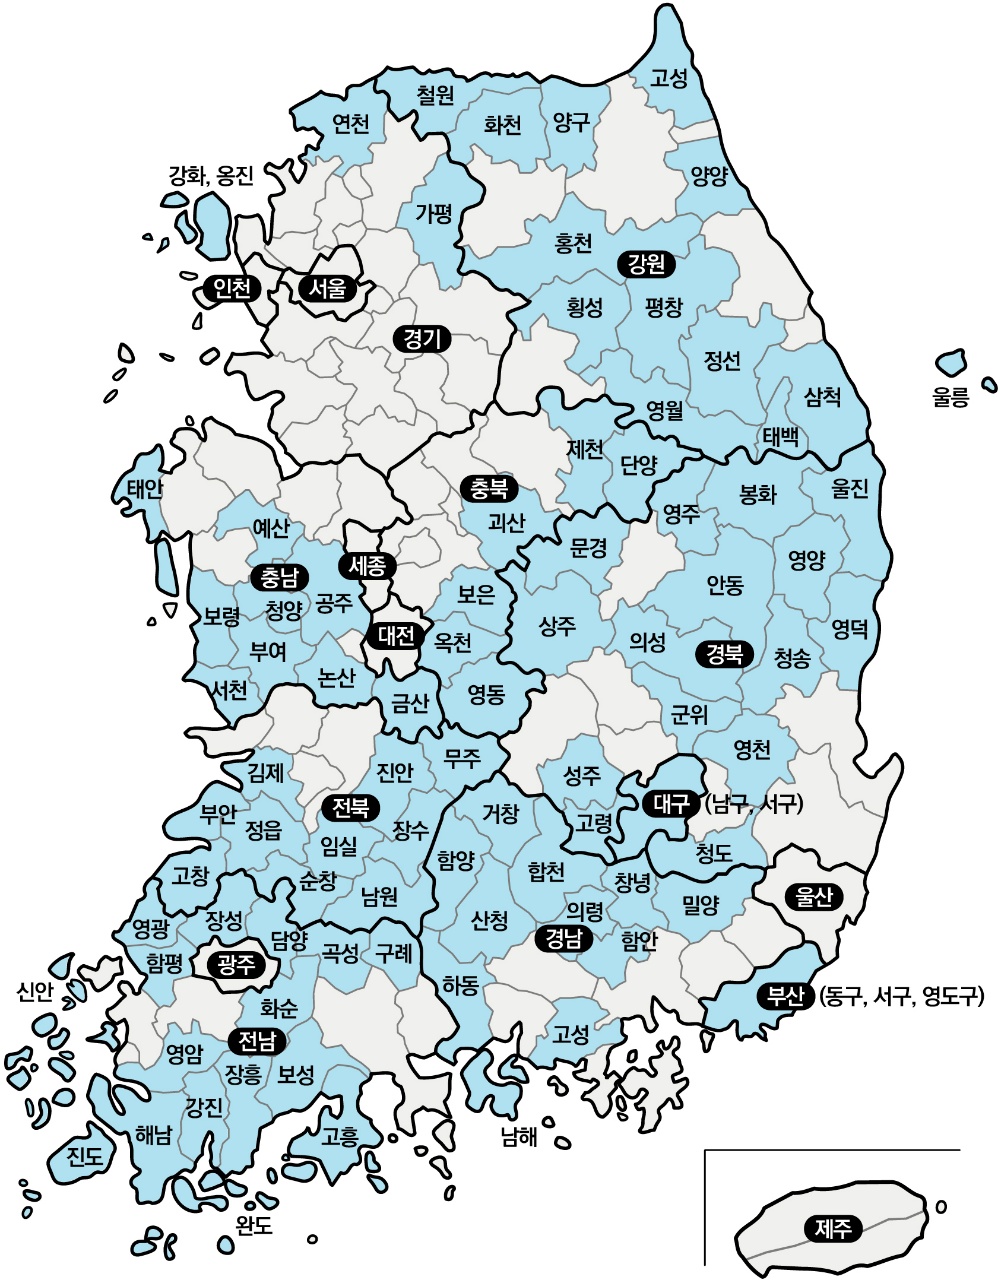 인구감소지역 89곳. 파란색으로 표시된 지역이다. (자료 : 행정안전부)